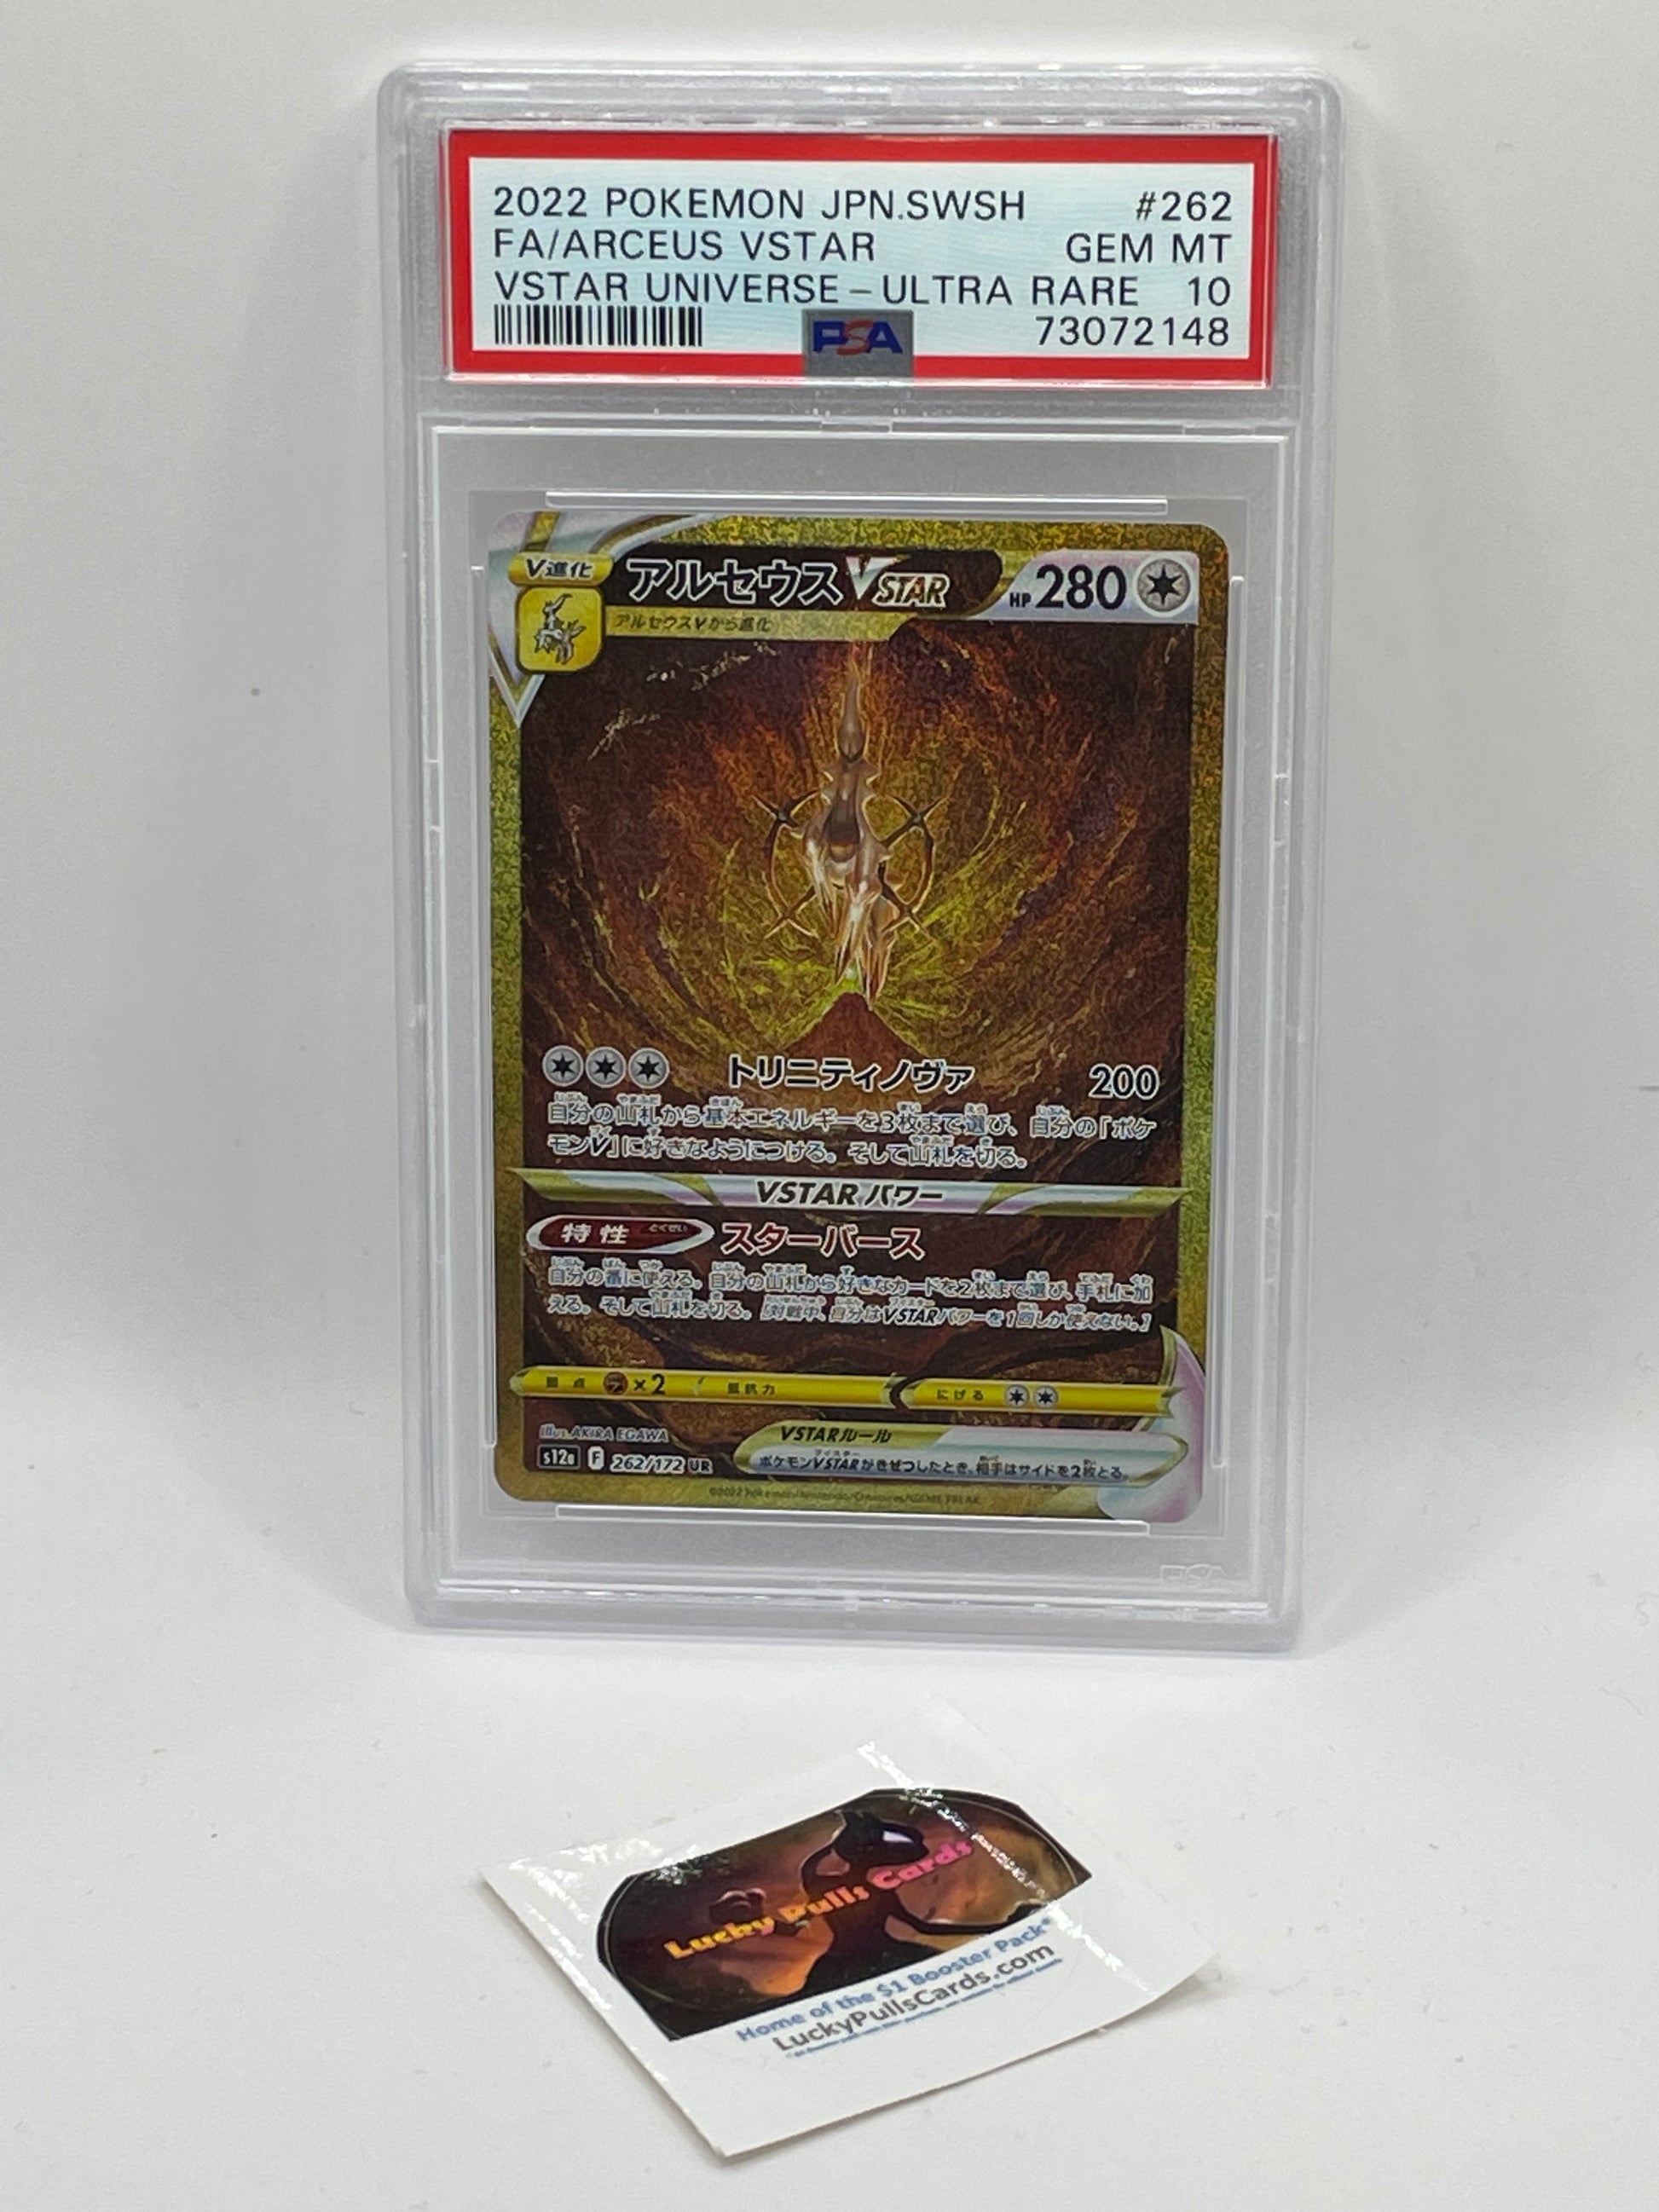 Golden Arceus Pokemon Card, Arceus Pokemon Card V Star